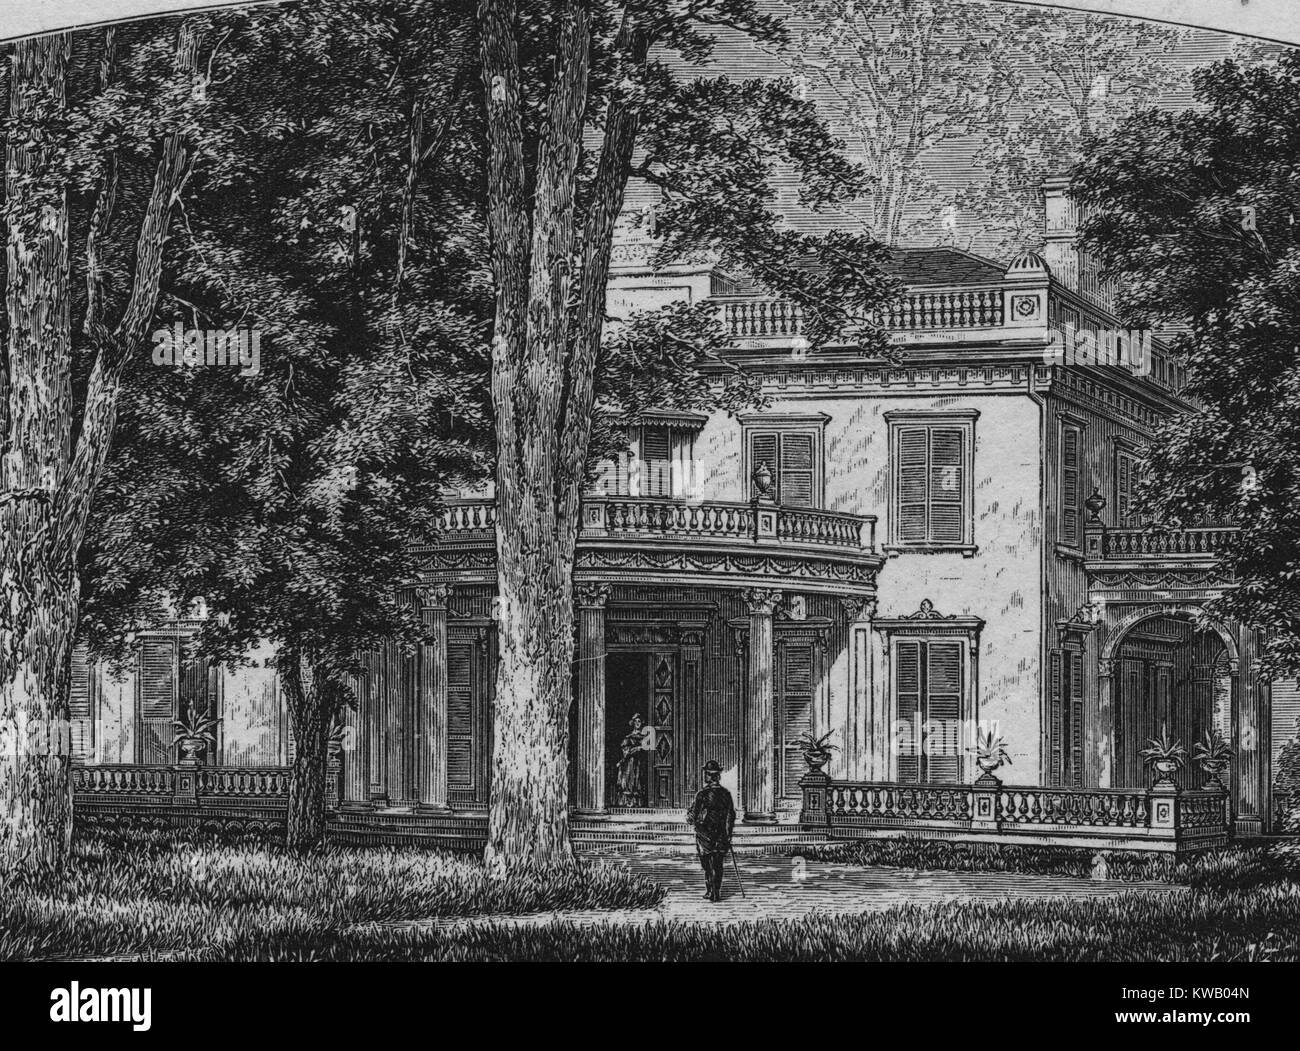 Gravure de l'extérieur de Montgomery Place, un domaine du xixe siècle et Monument Historique, Annandale-on-Hudson, New York, 1836. À partir de la Bibliothèque publique de New York. Banque D'Images